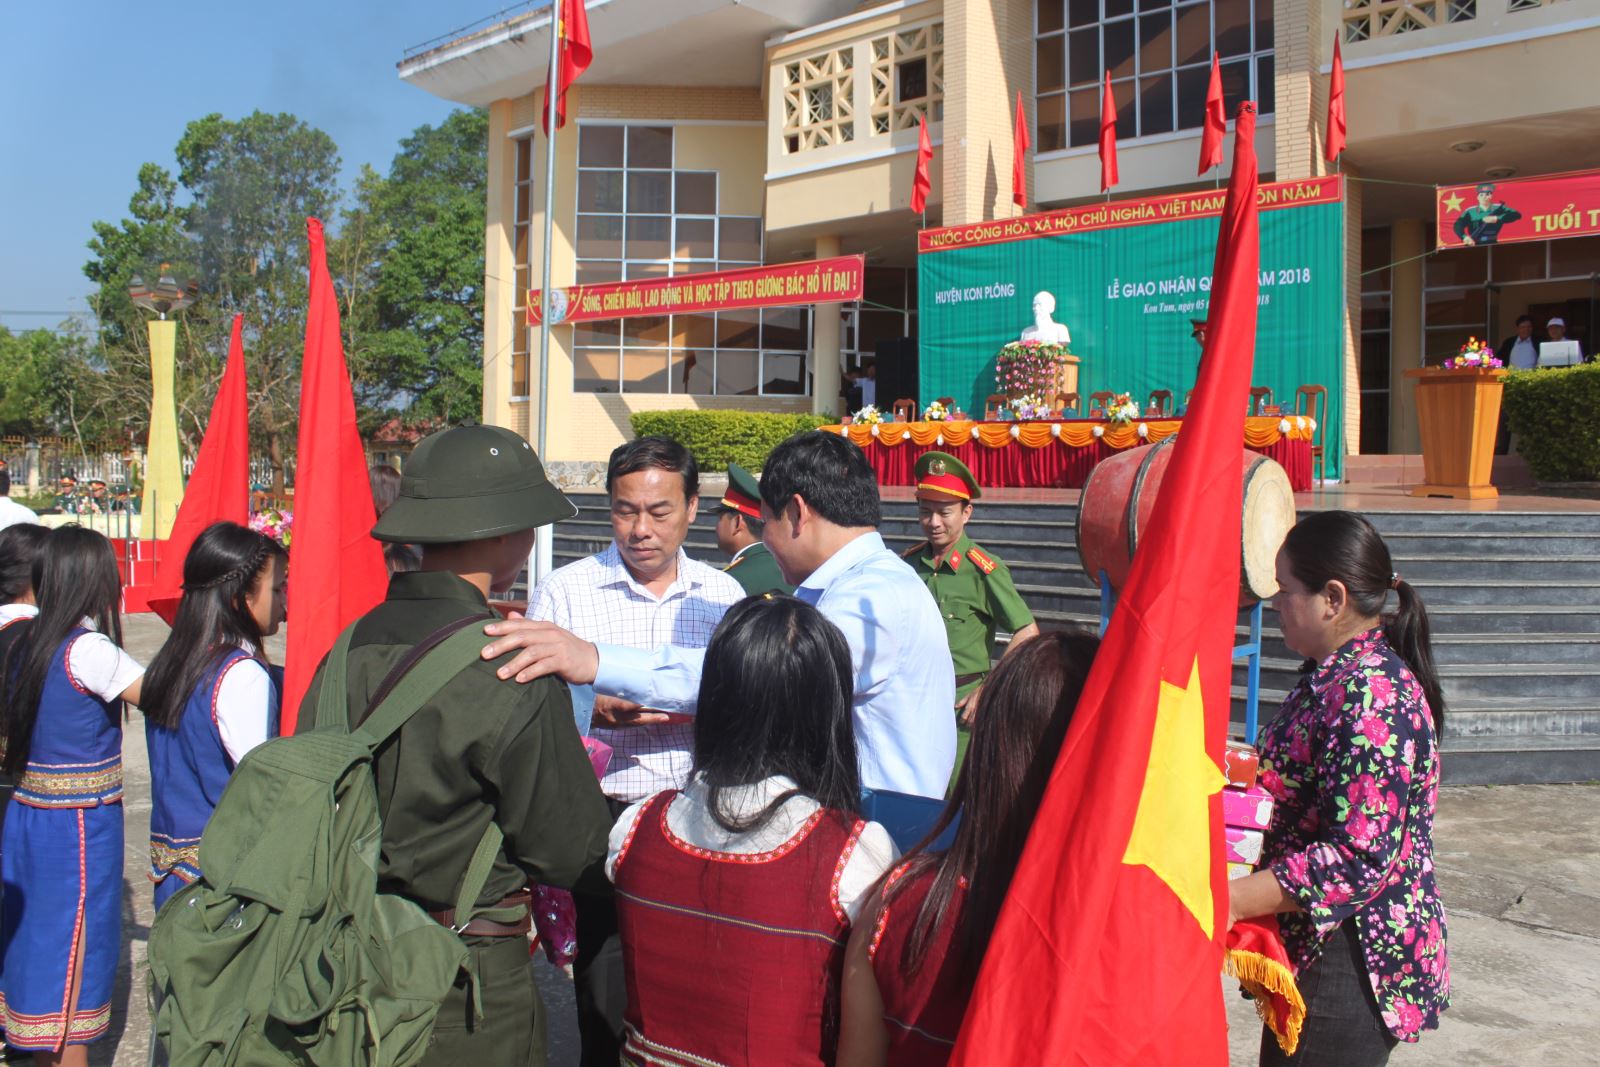 Đồng chí Nguyên Đức Tuy, Phó Chủ tịch TT UBND tỉnh và đồng chí Nguyễn Văn Bình, Bí thư huyện ủy tặng quà cho các tân binh